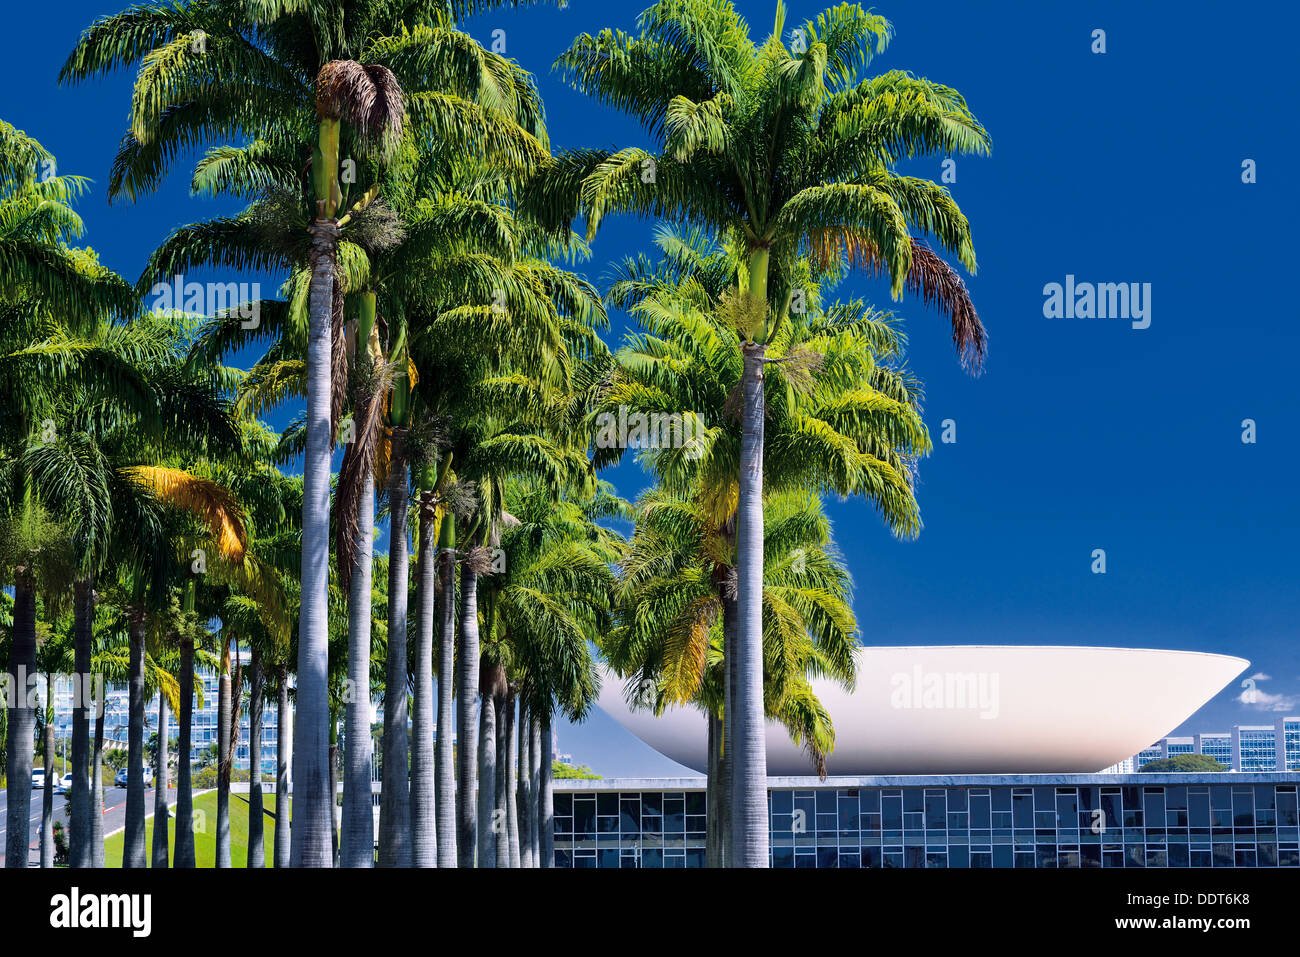 Brasilien, Brasilia: Palmen und Rückseite Blick auf National Congress building Stockfoto